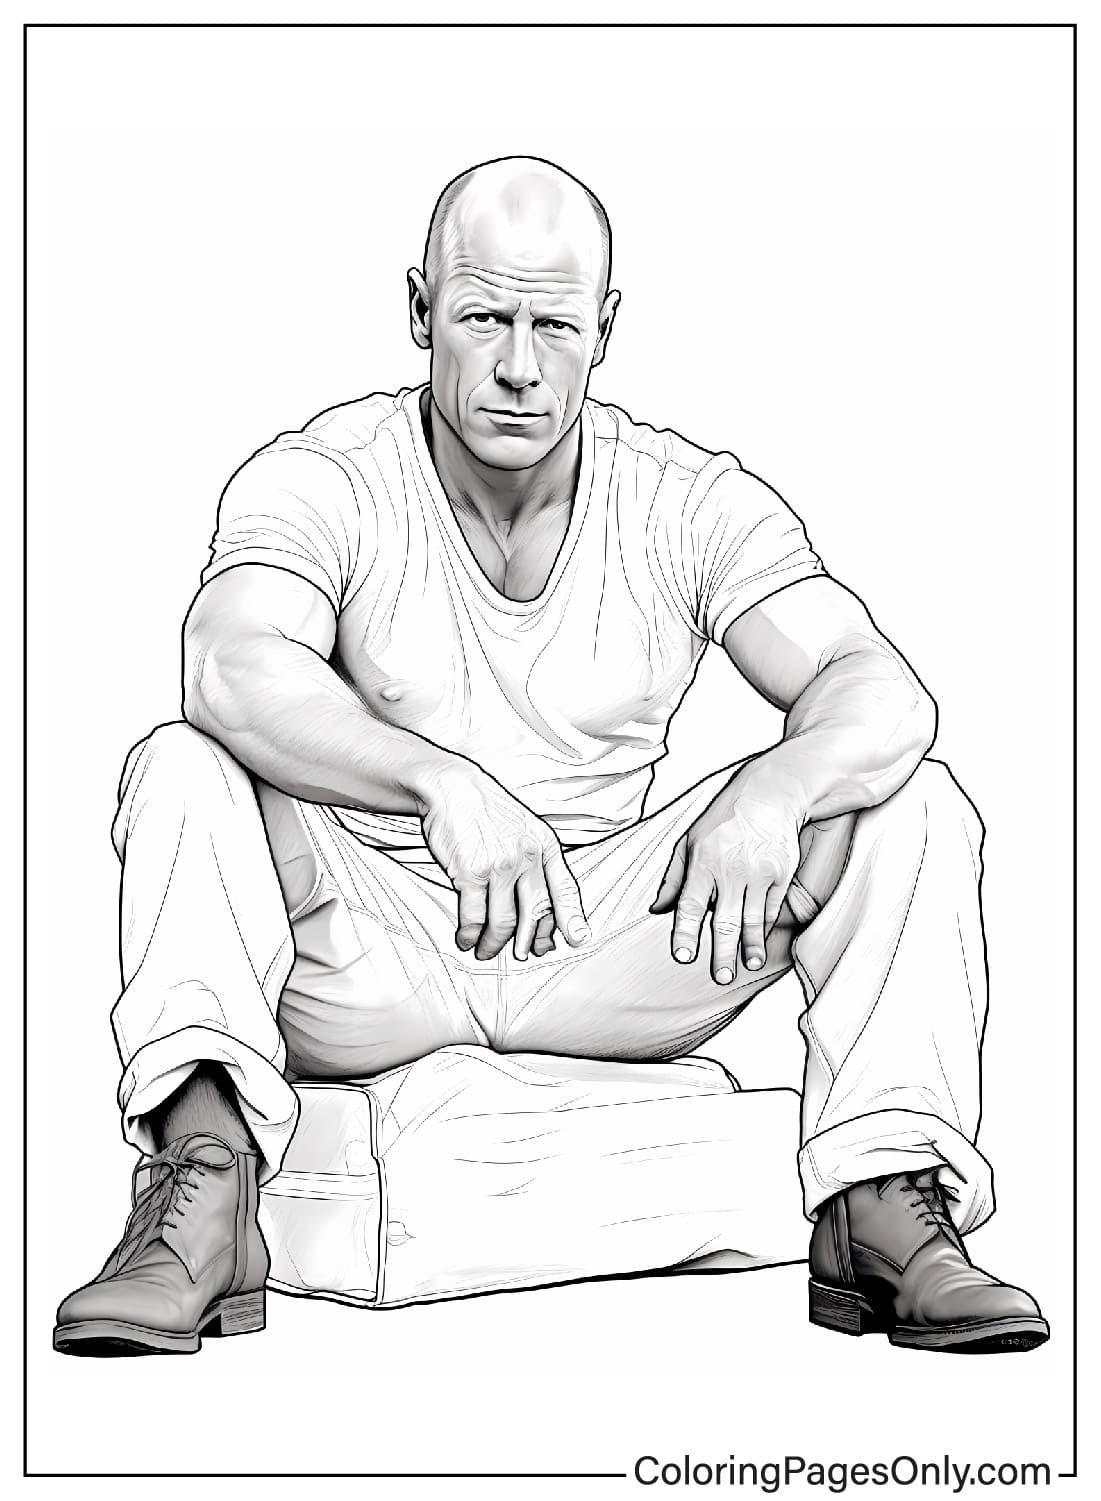 布鲁斯·威利斯 (Bruce Willis) 着色页可打印 布鲁斯·威利斯 (Bruce Willis)